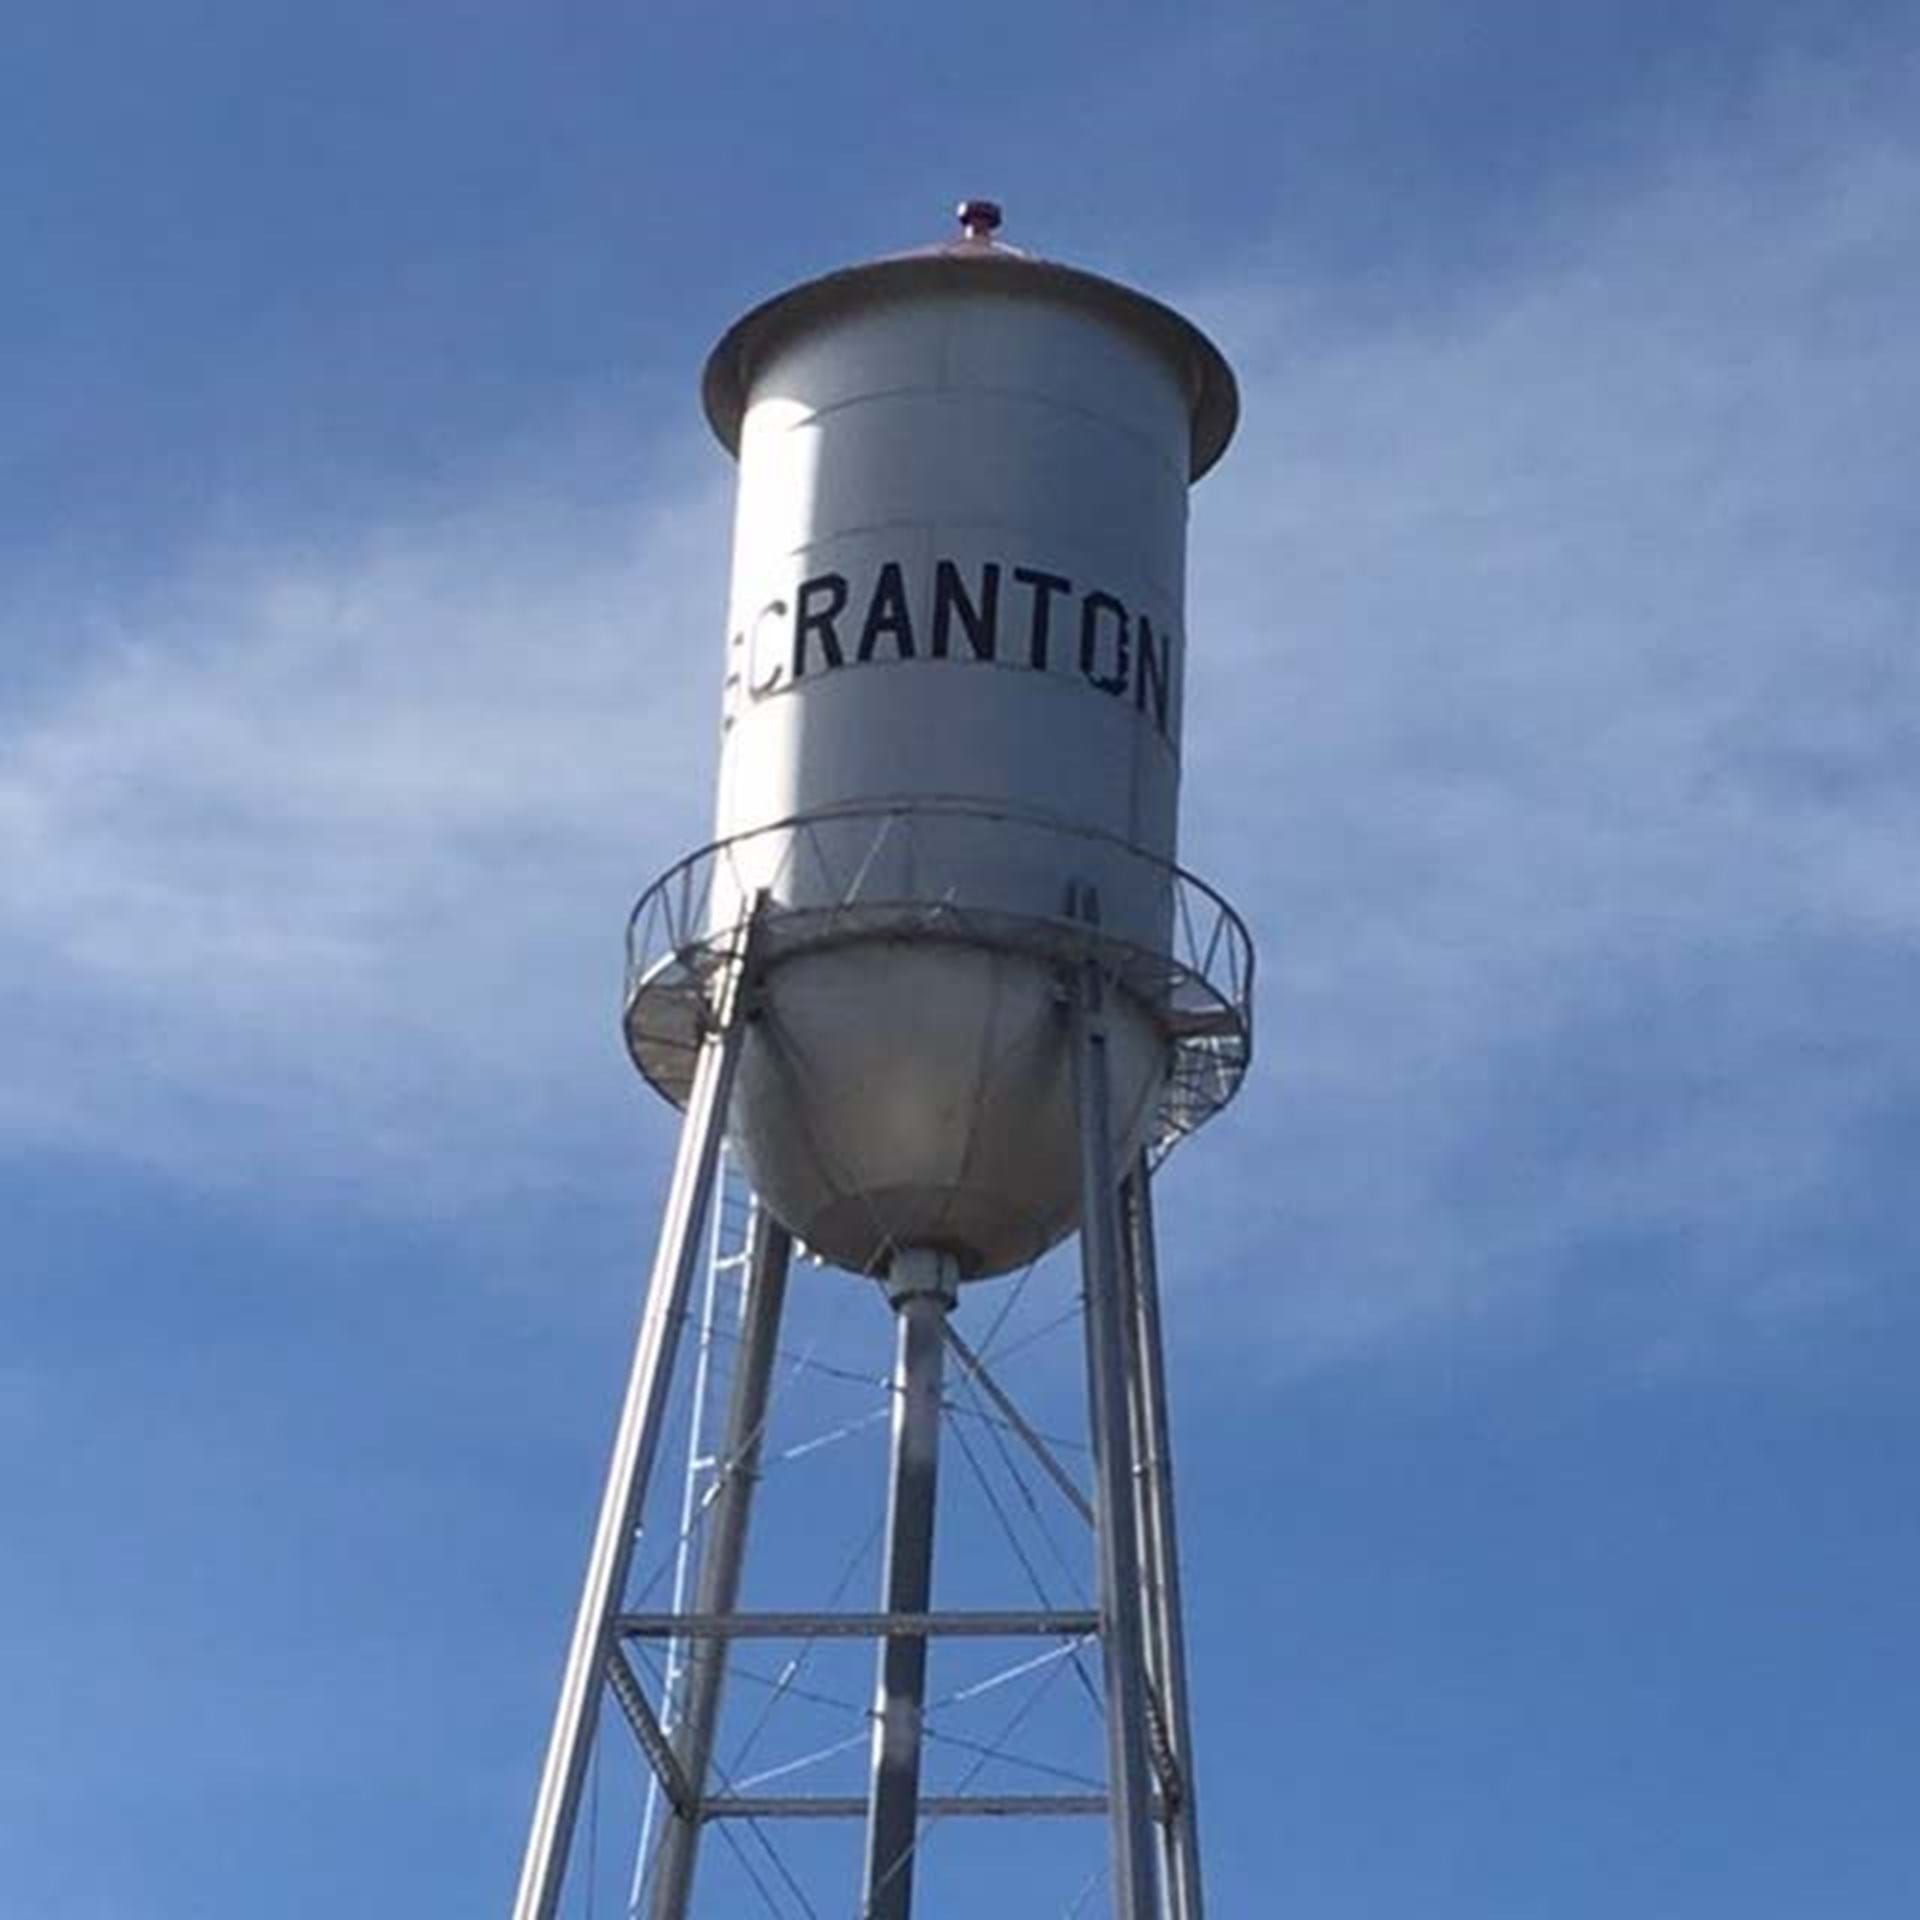 Scranton Water Tower